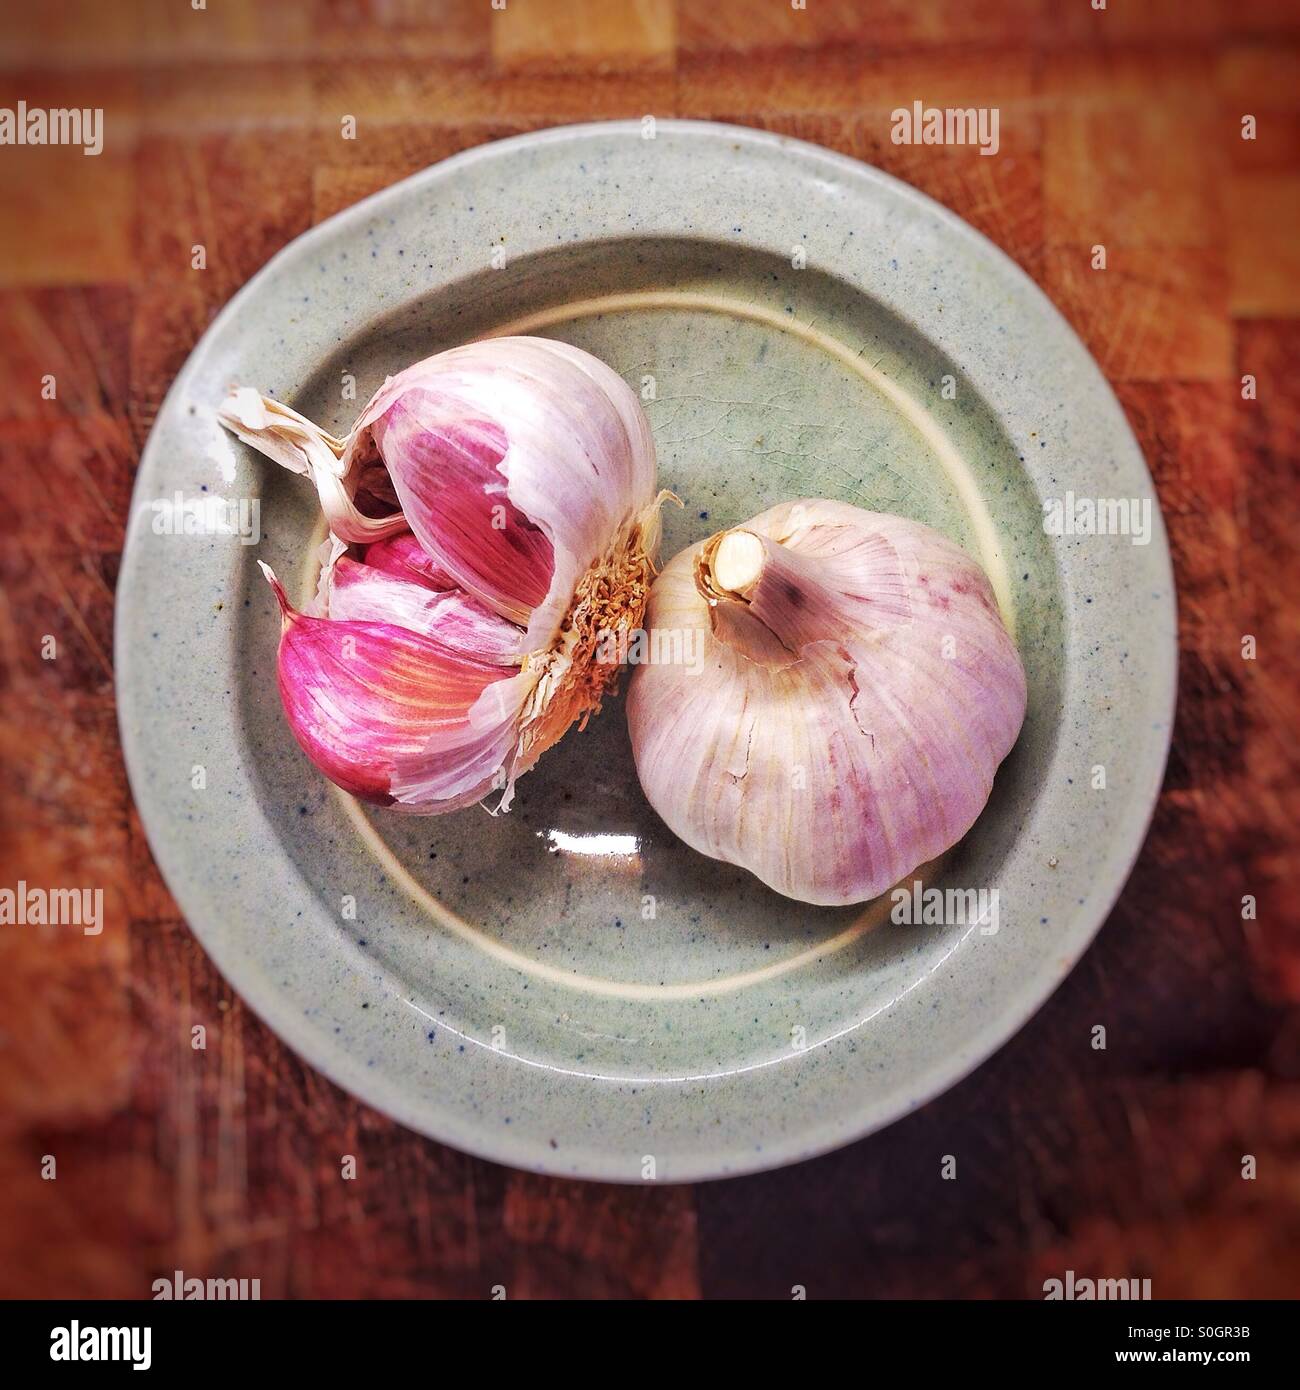 Garlic bulbs in a dish Stock Photo